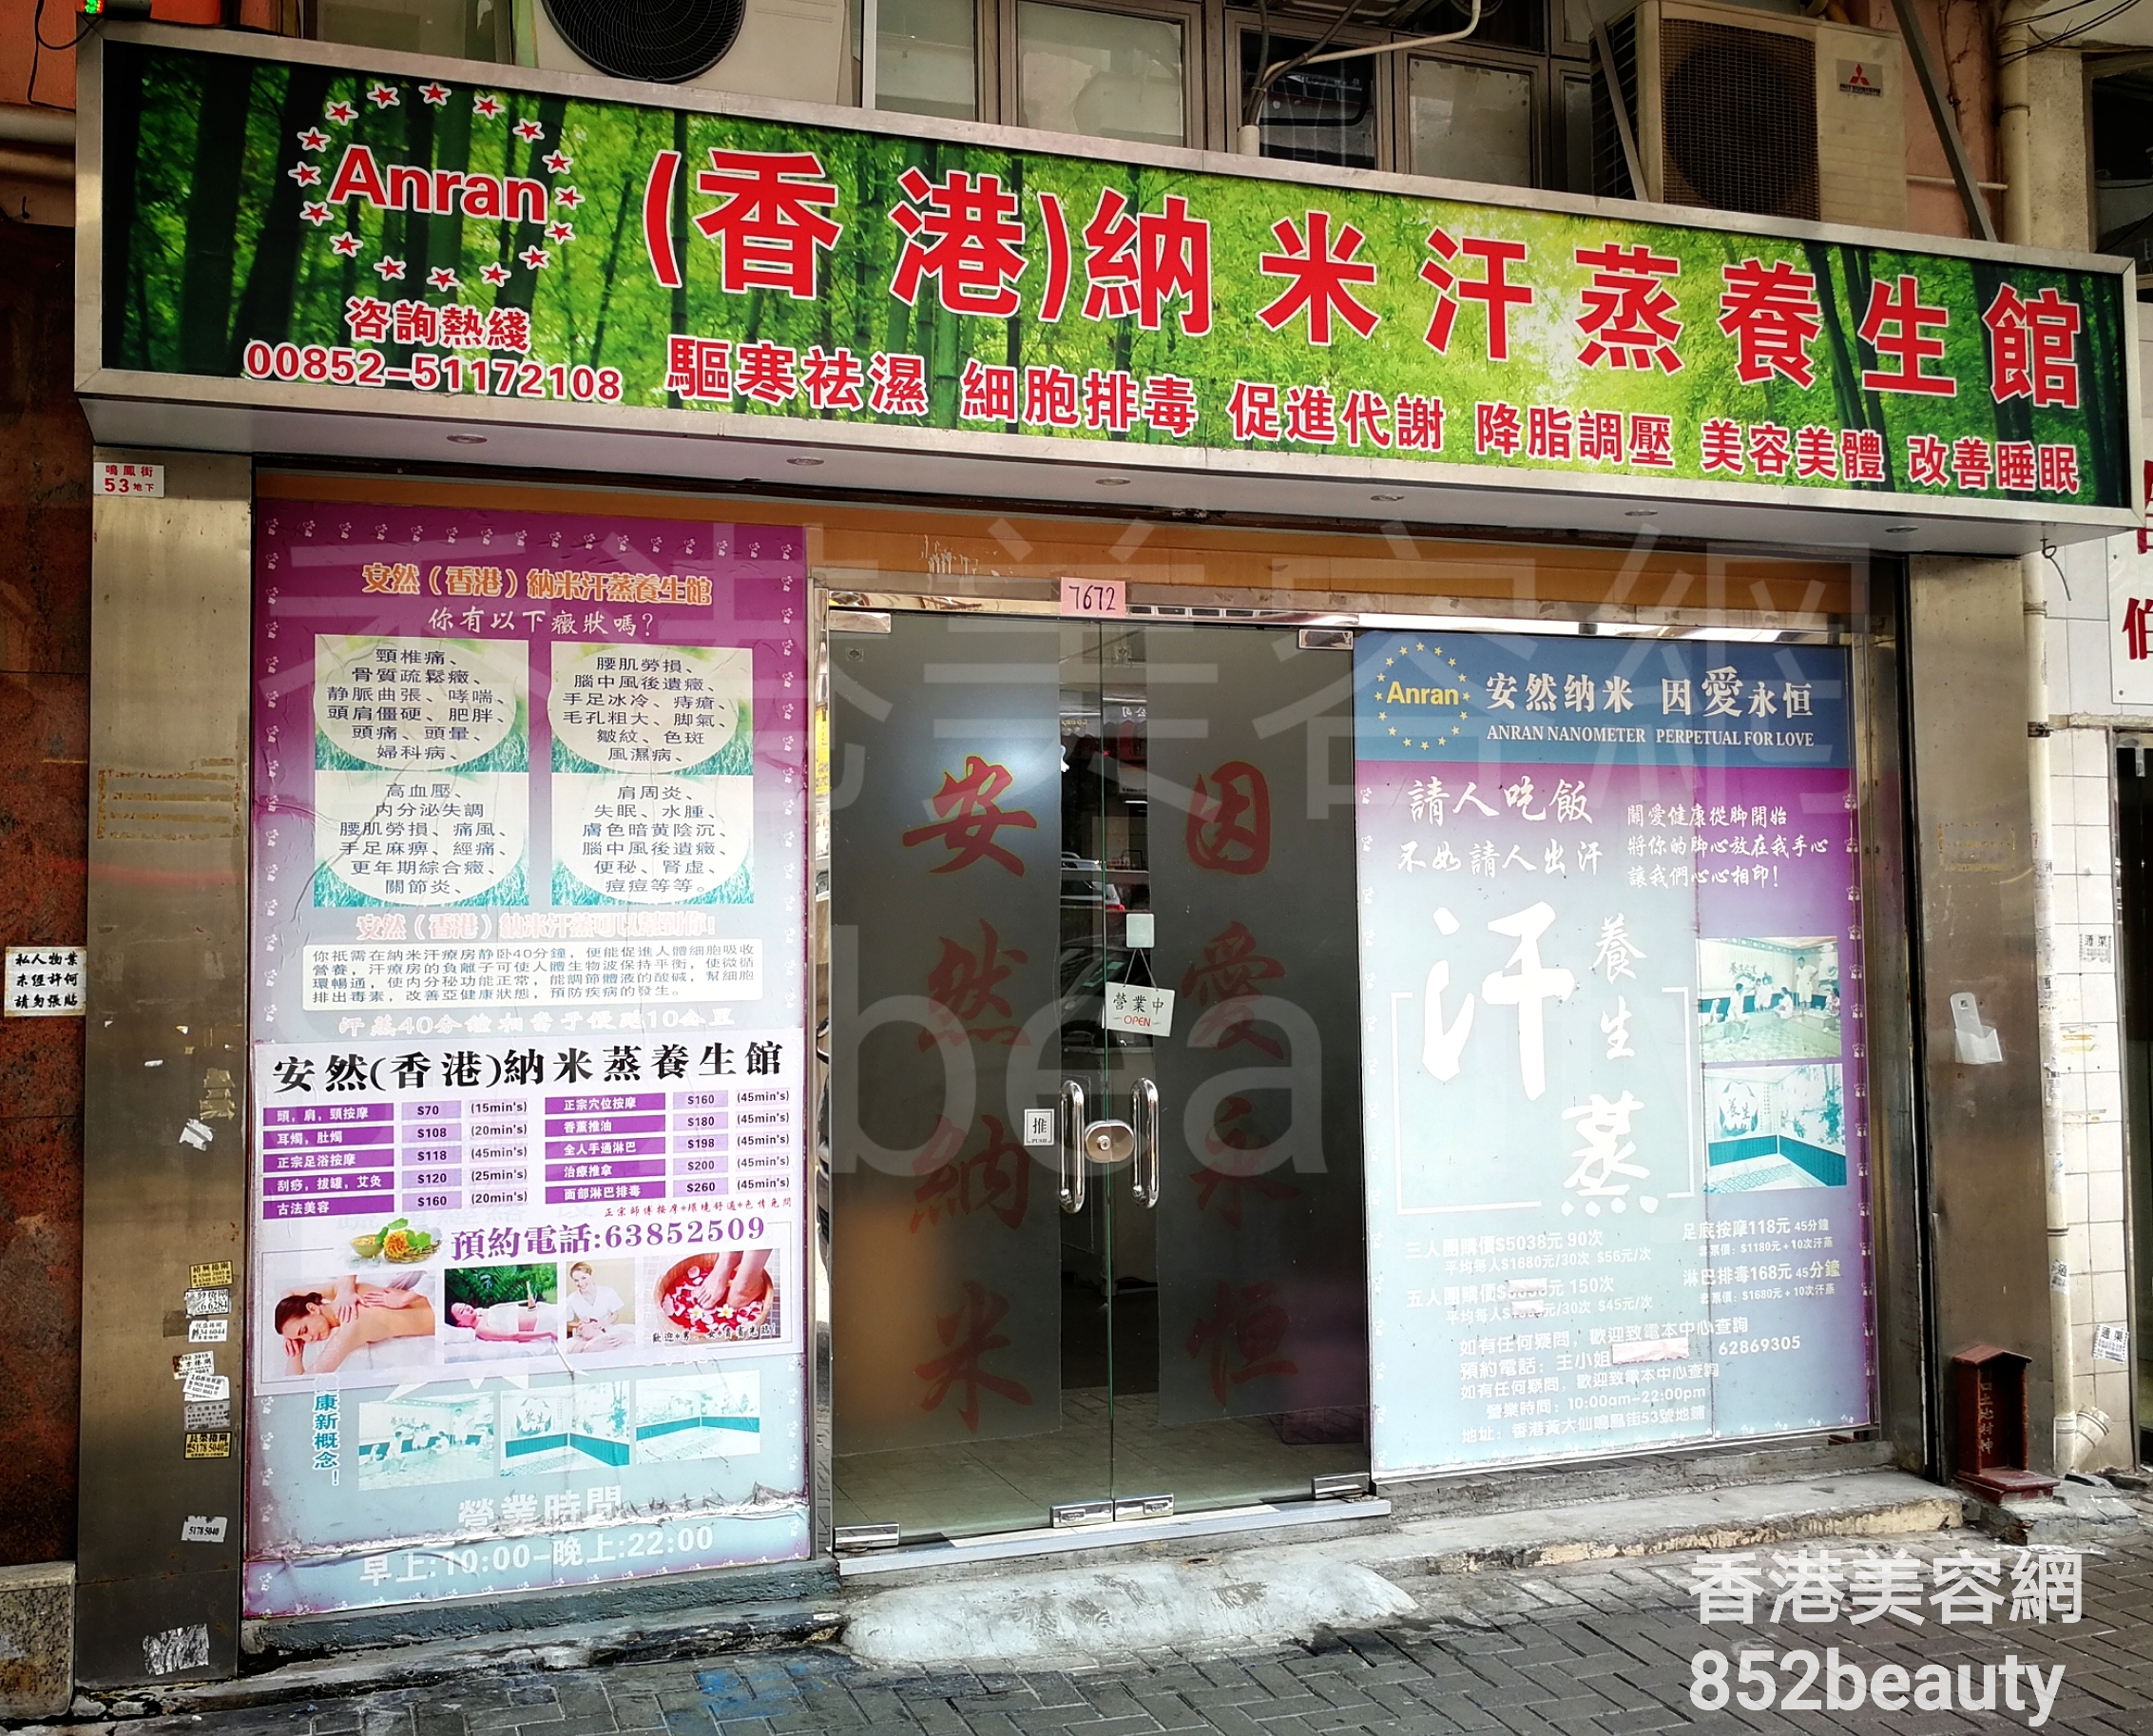 美容院 Beauty Salon: (香港)納米汗蒸養生館